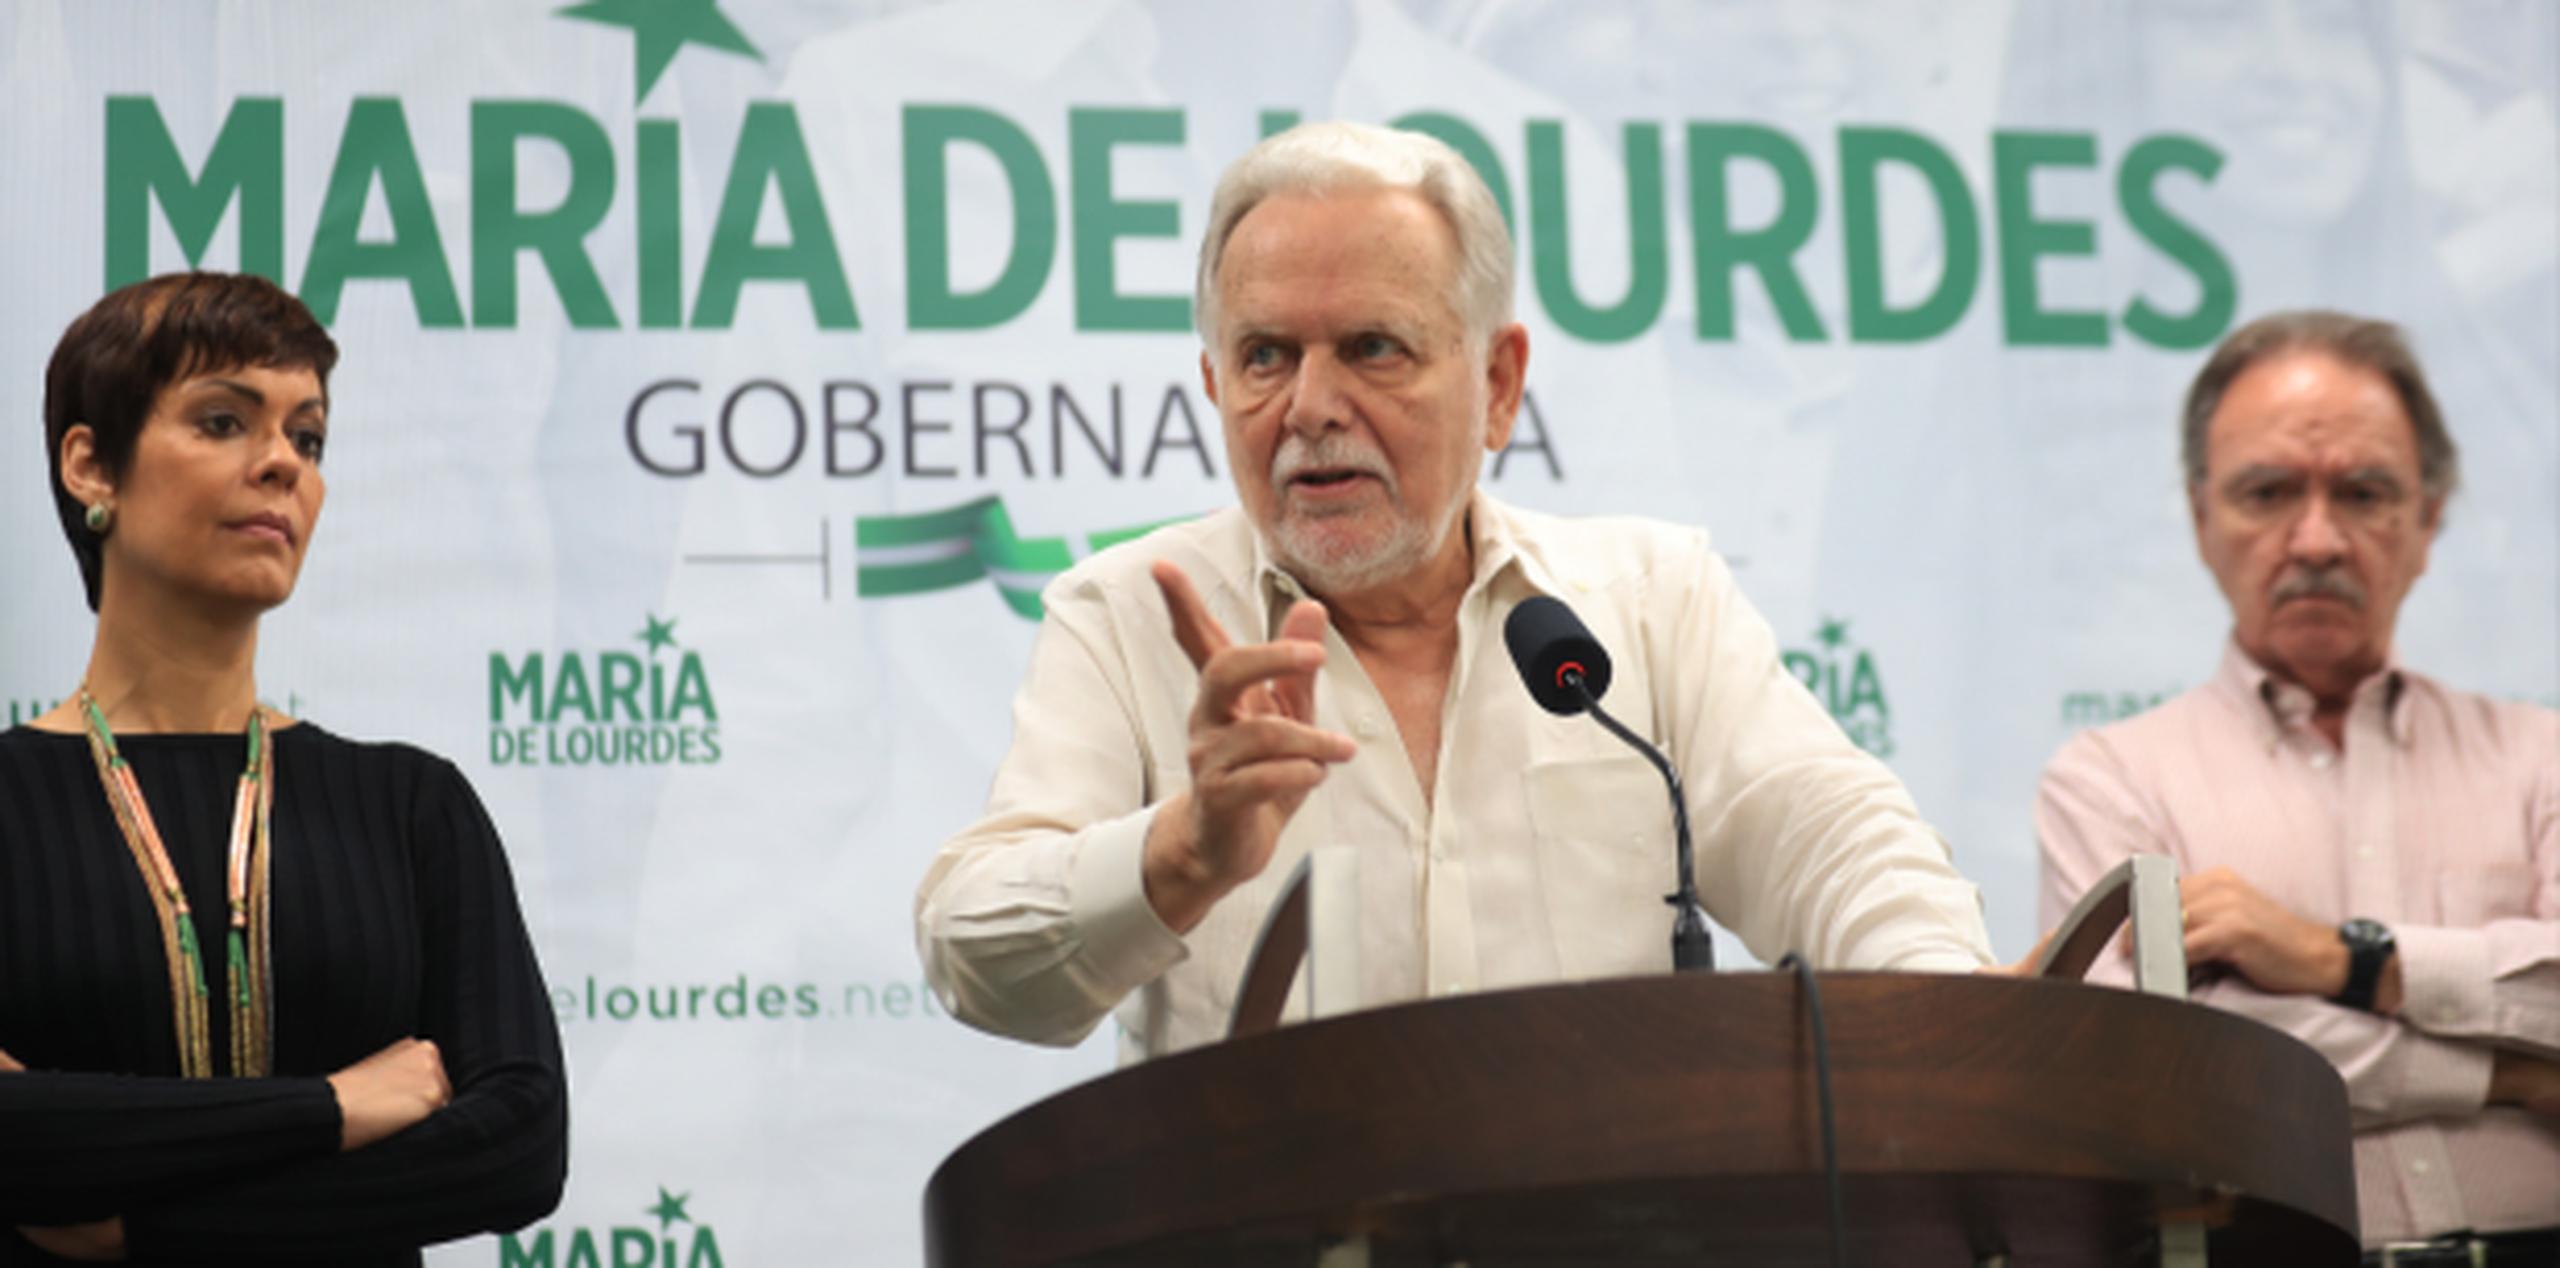 El presidente del PIP, Rubén Berríos Martínez, insistió en que “hay que ponerse de pie para descolonizar nuestra patria”. Atrás están Santiago y Martín. (teresa.canino@gfrmedia.com)